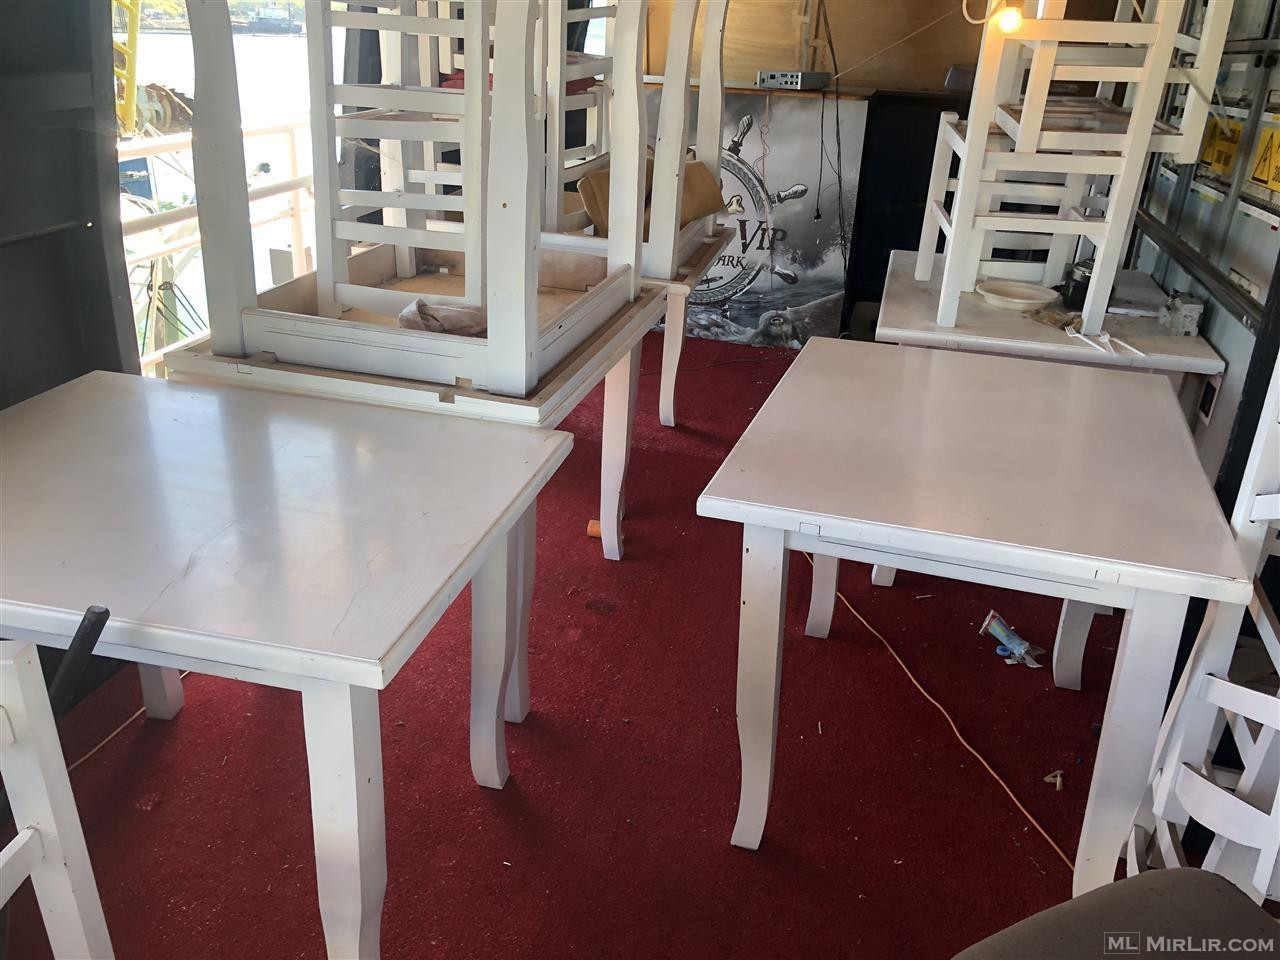 Tavolina dhe karrige